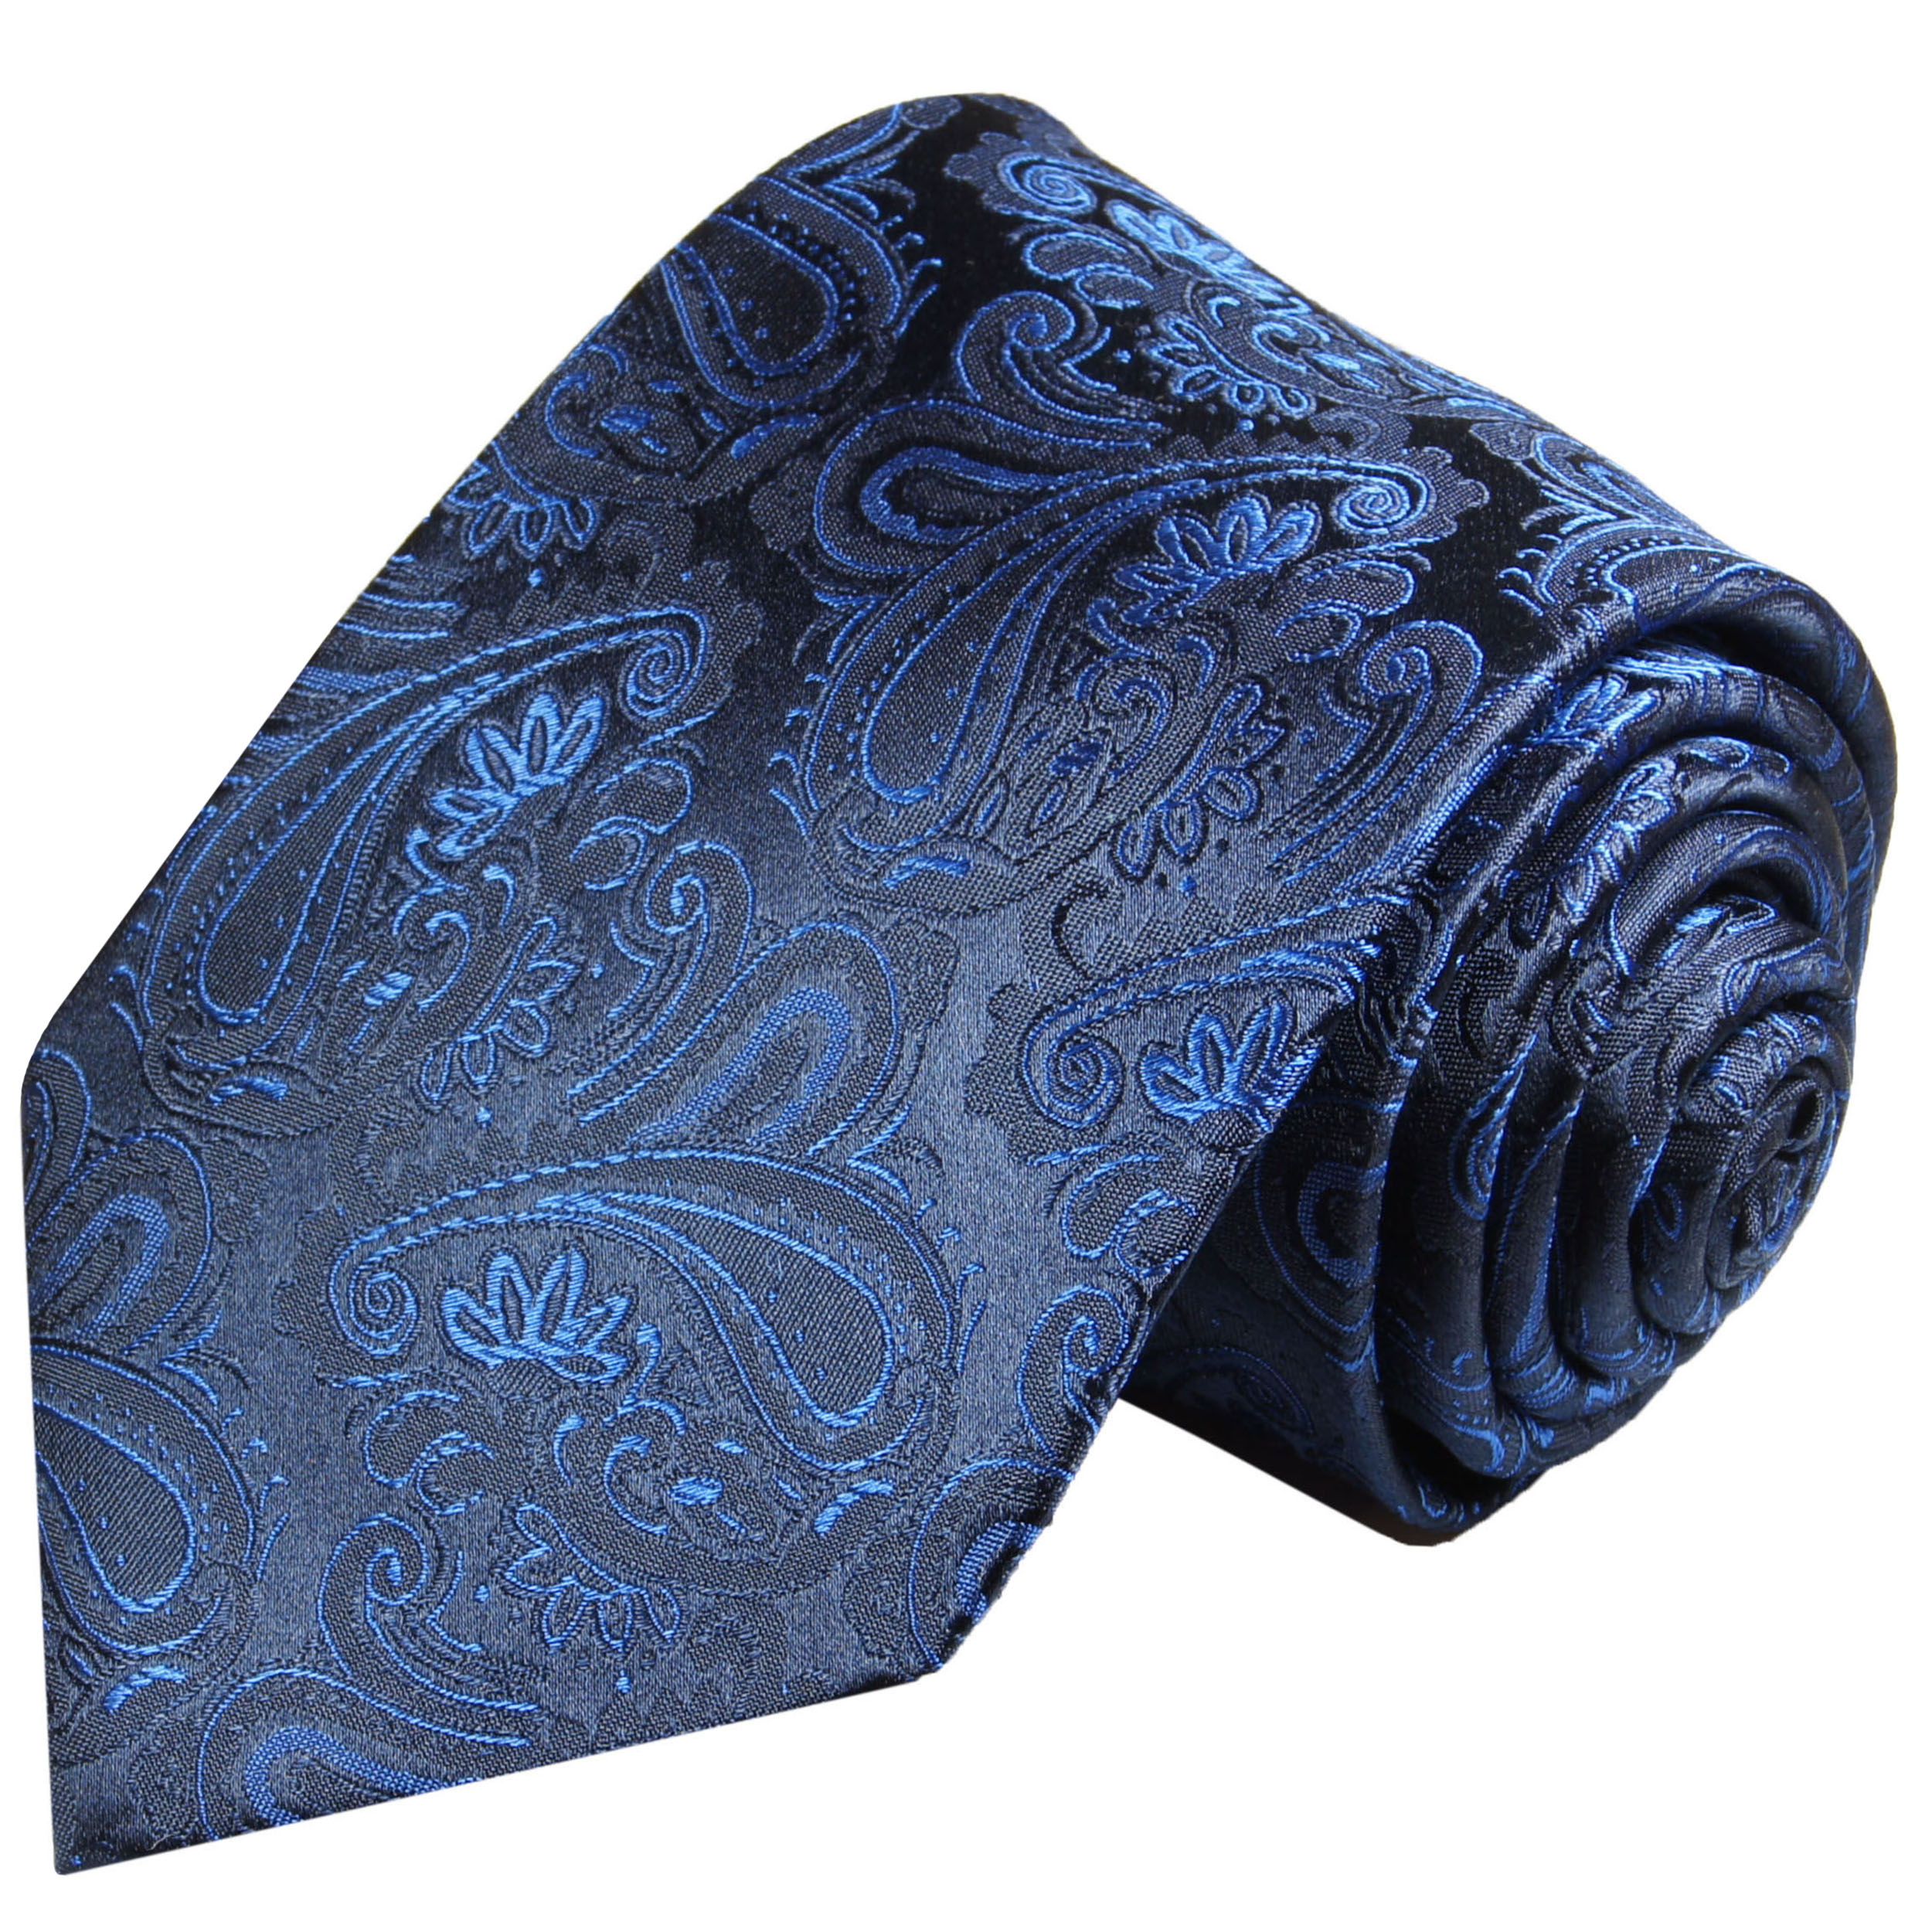 blau - 518 | Krawatte Malone Paul Shop paisley JETZT BESTELLEN